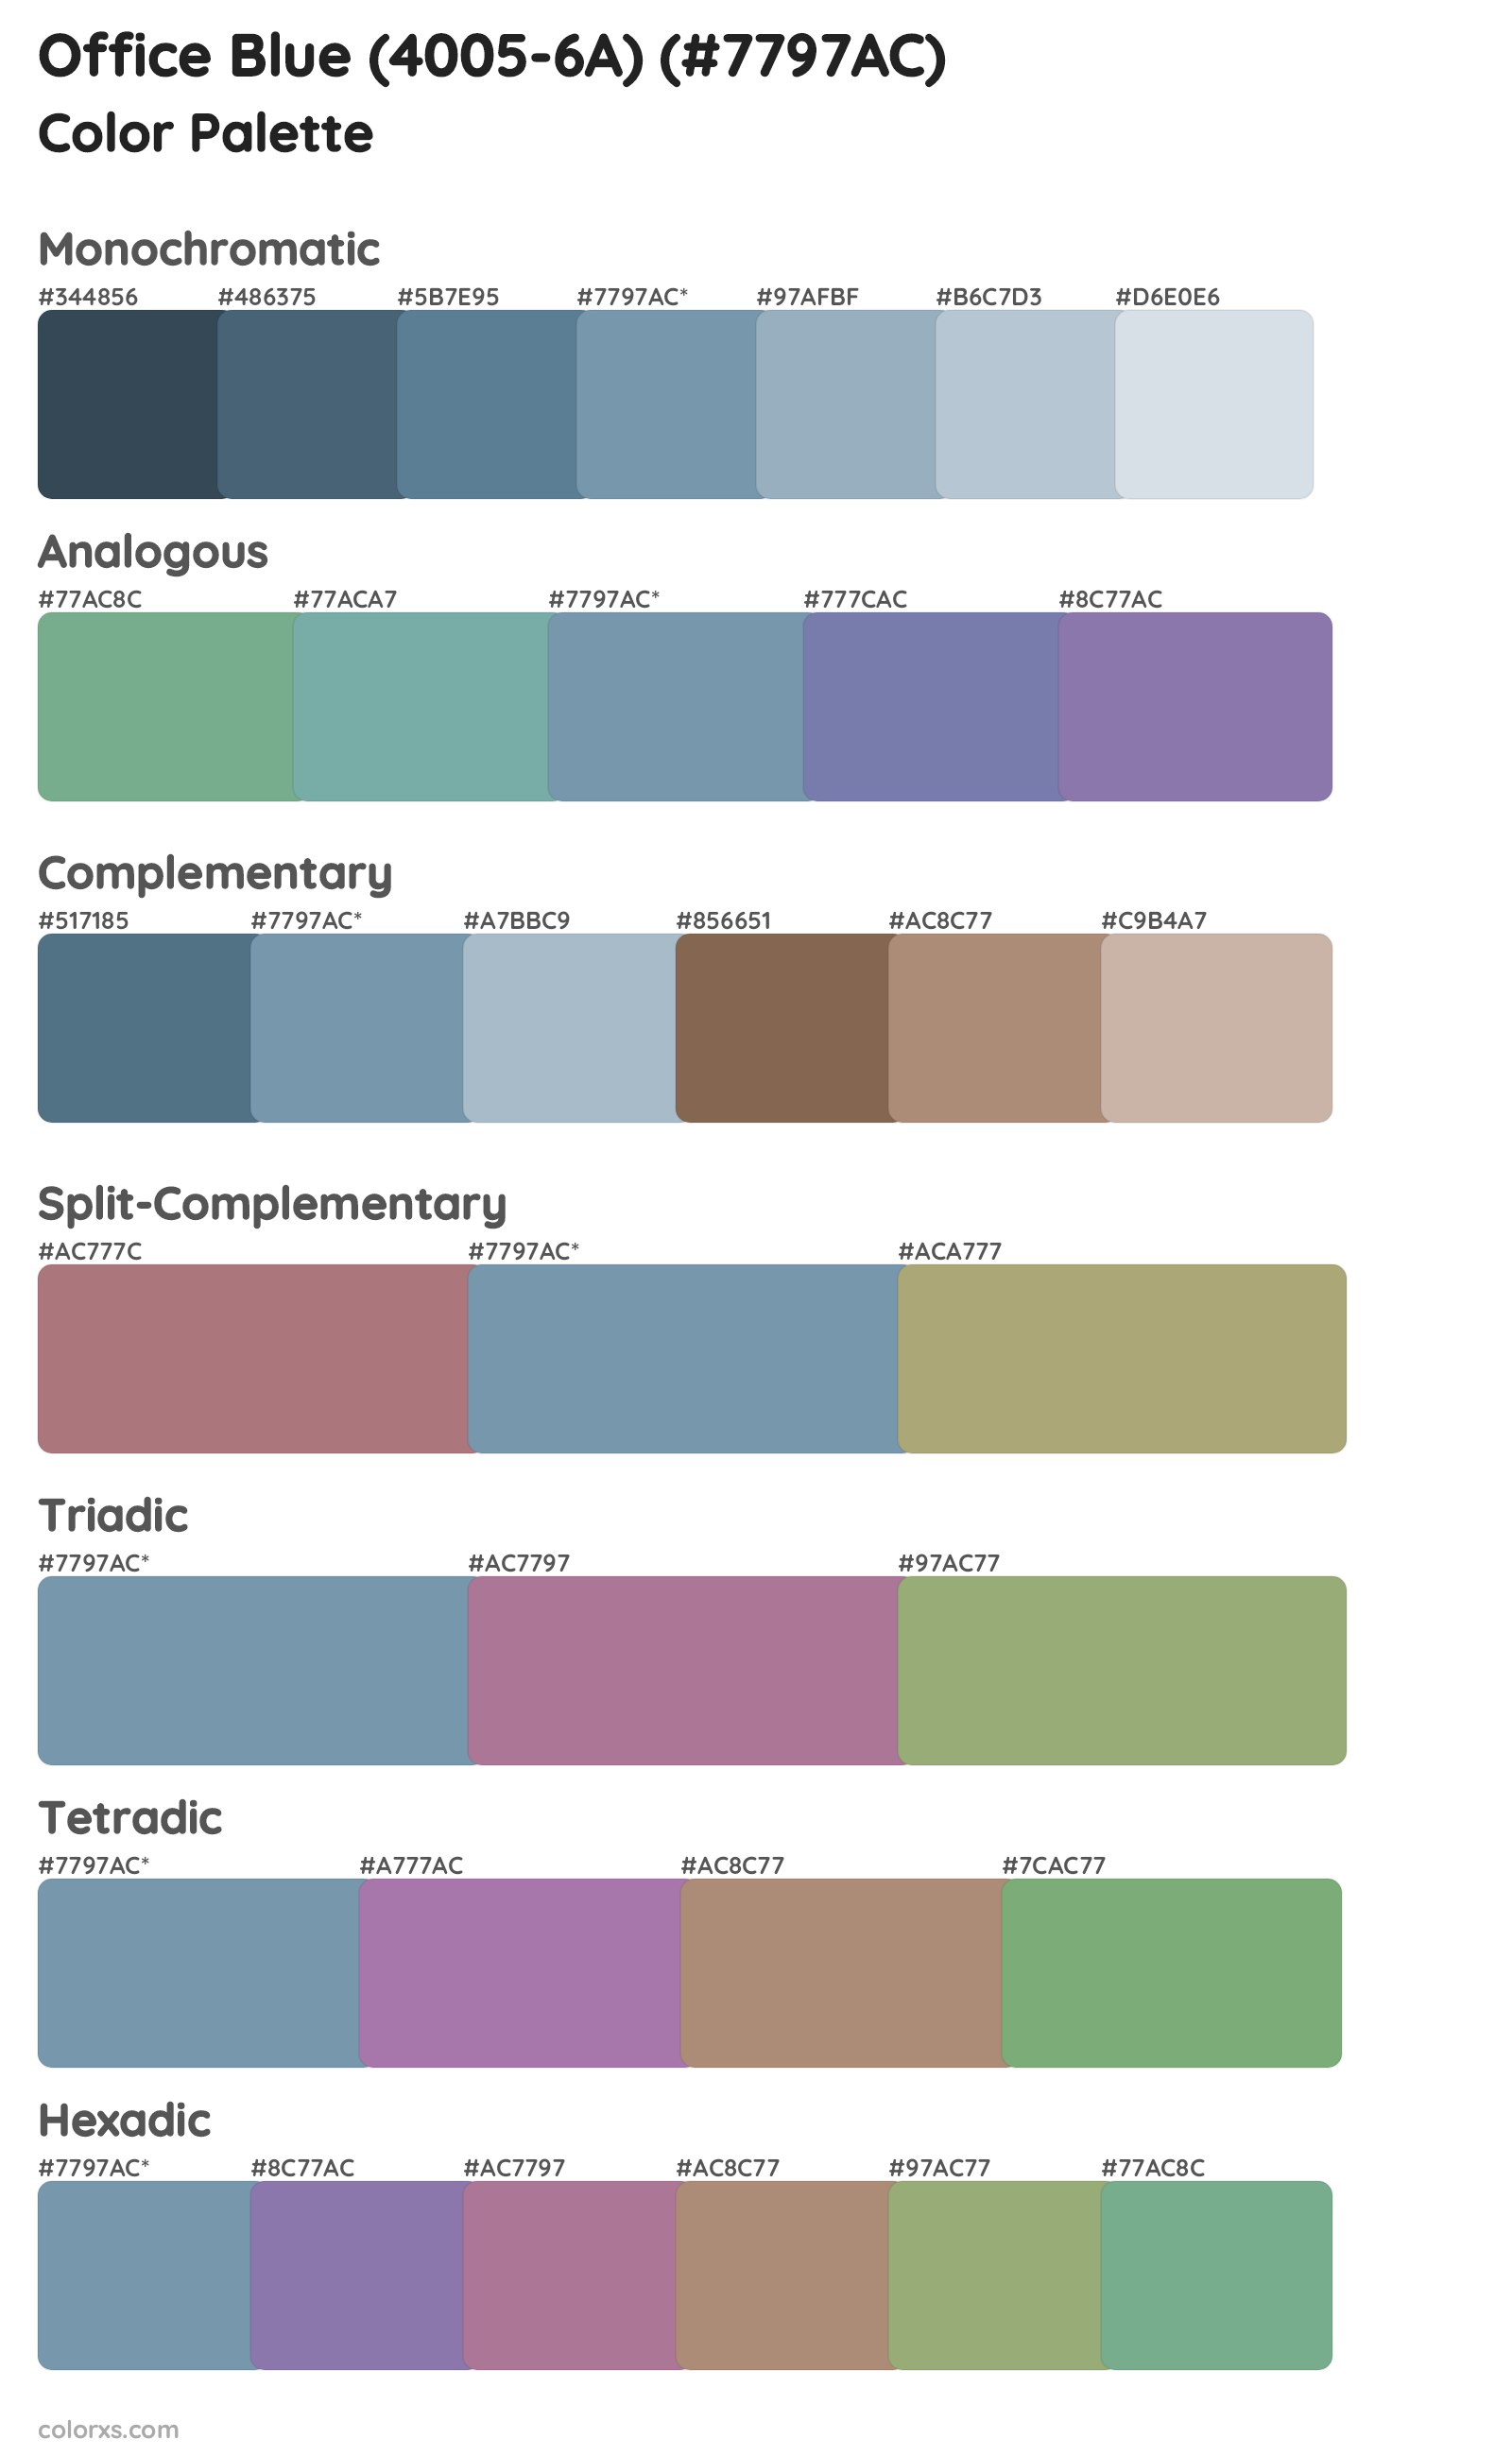 Office Blue (4005-6A) Color Scheme Palettes